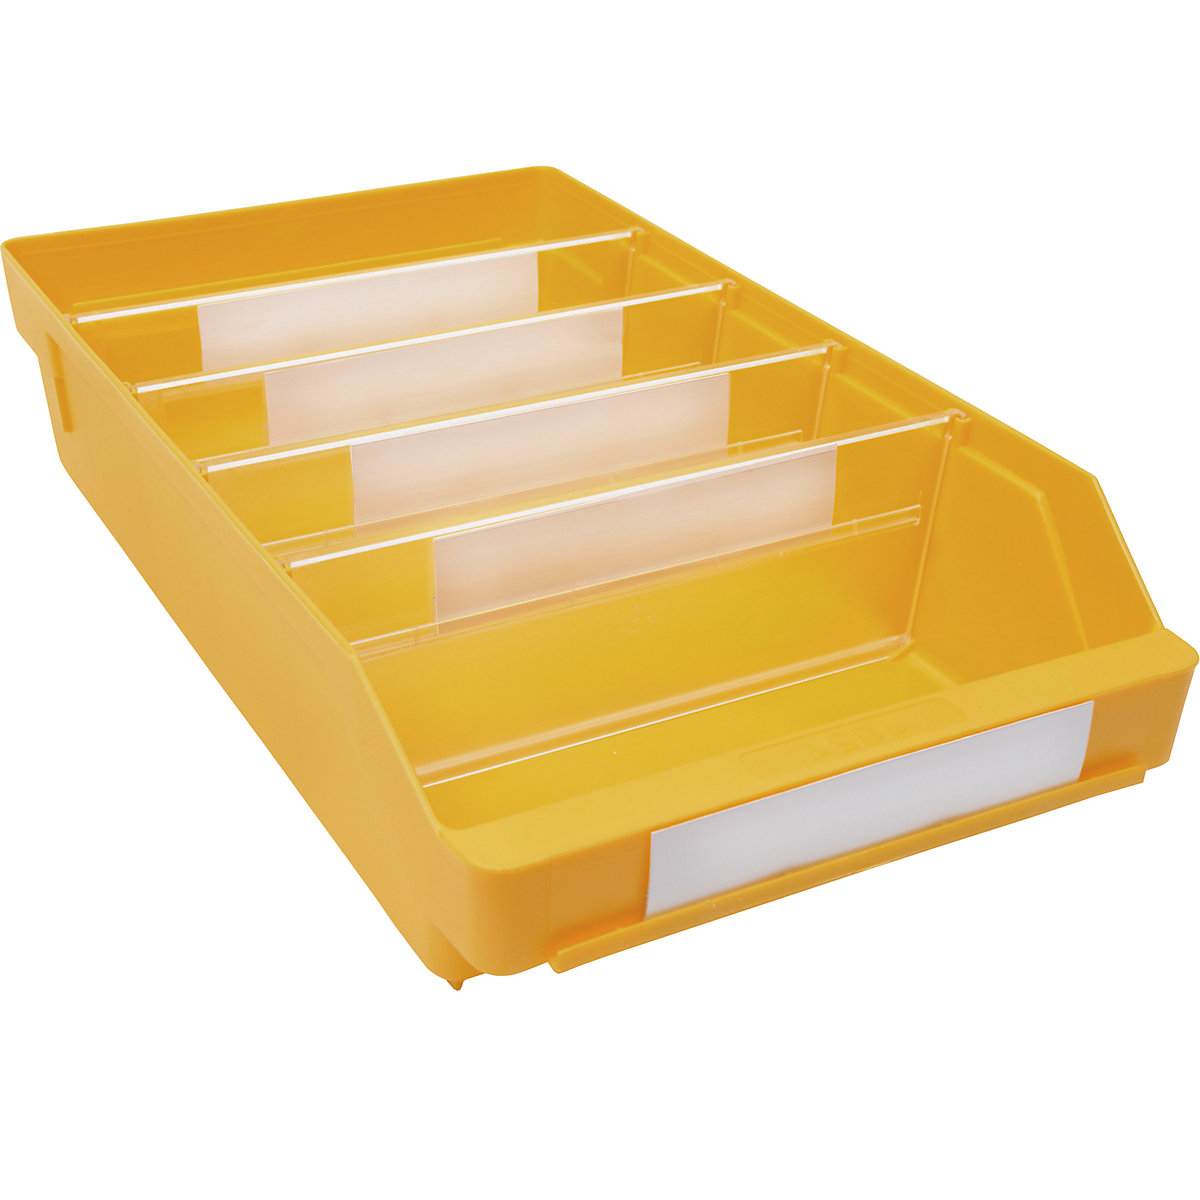 Kutija za regale od polipropilena otpornog na udarce – STEMO, u žutoj boji, DxŠxV 400 x 240 x 95 mm, pak. 15 kom.-15